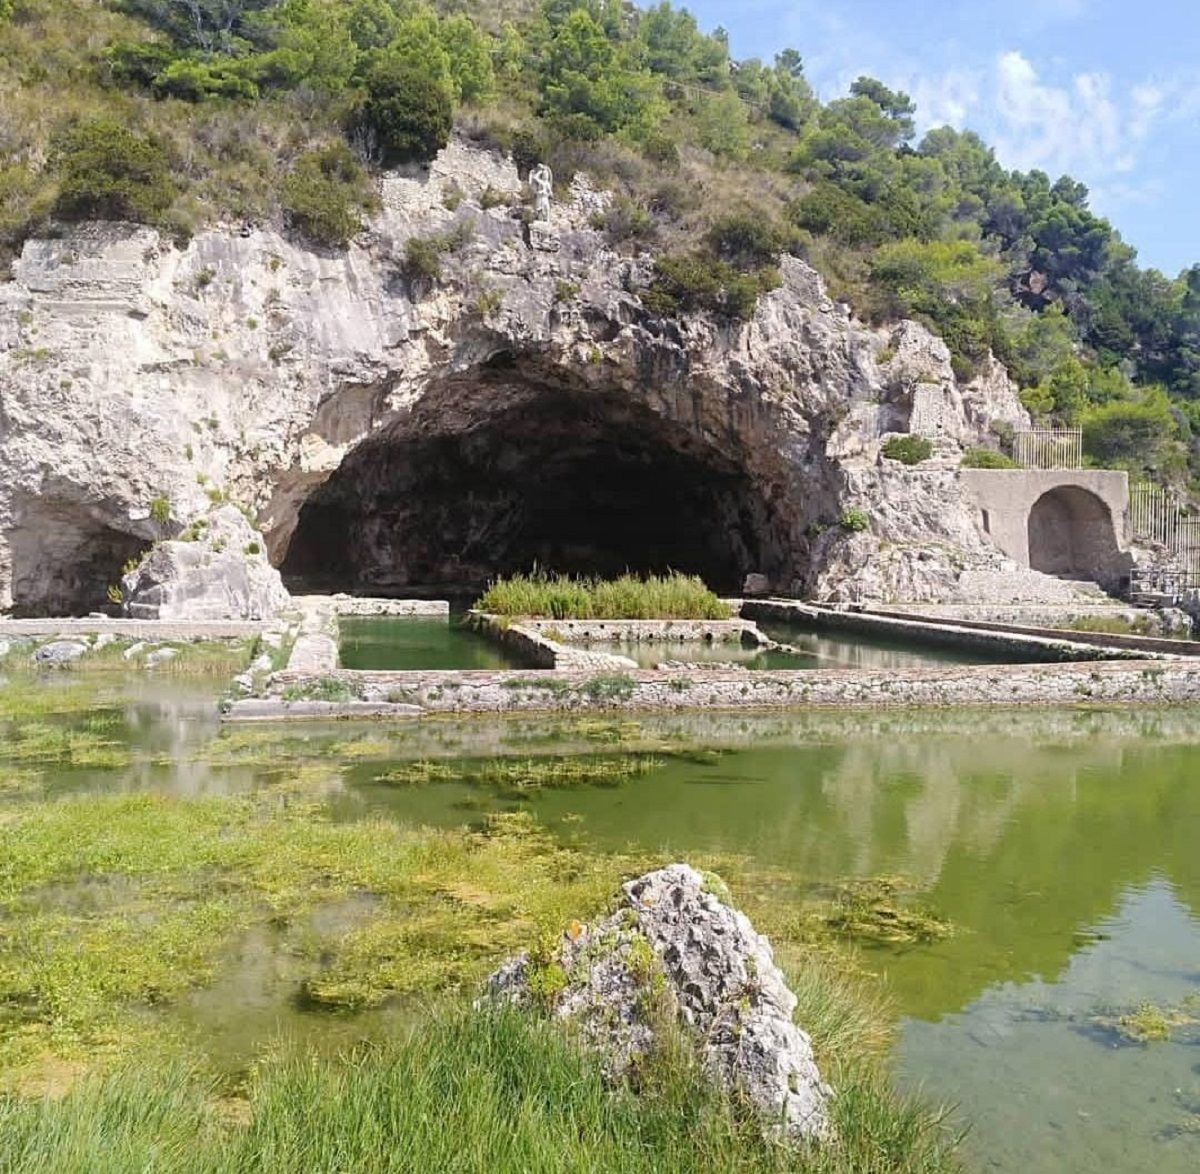 In volo con i droni sulle bellezze dell'Italia. La grotta di Tiberio a Sperlonga